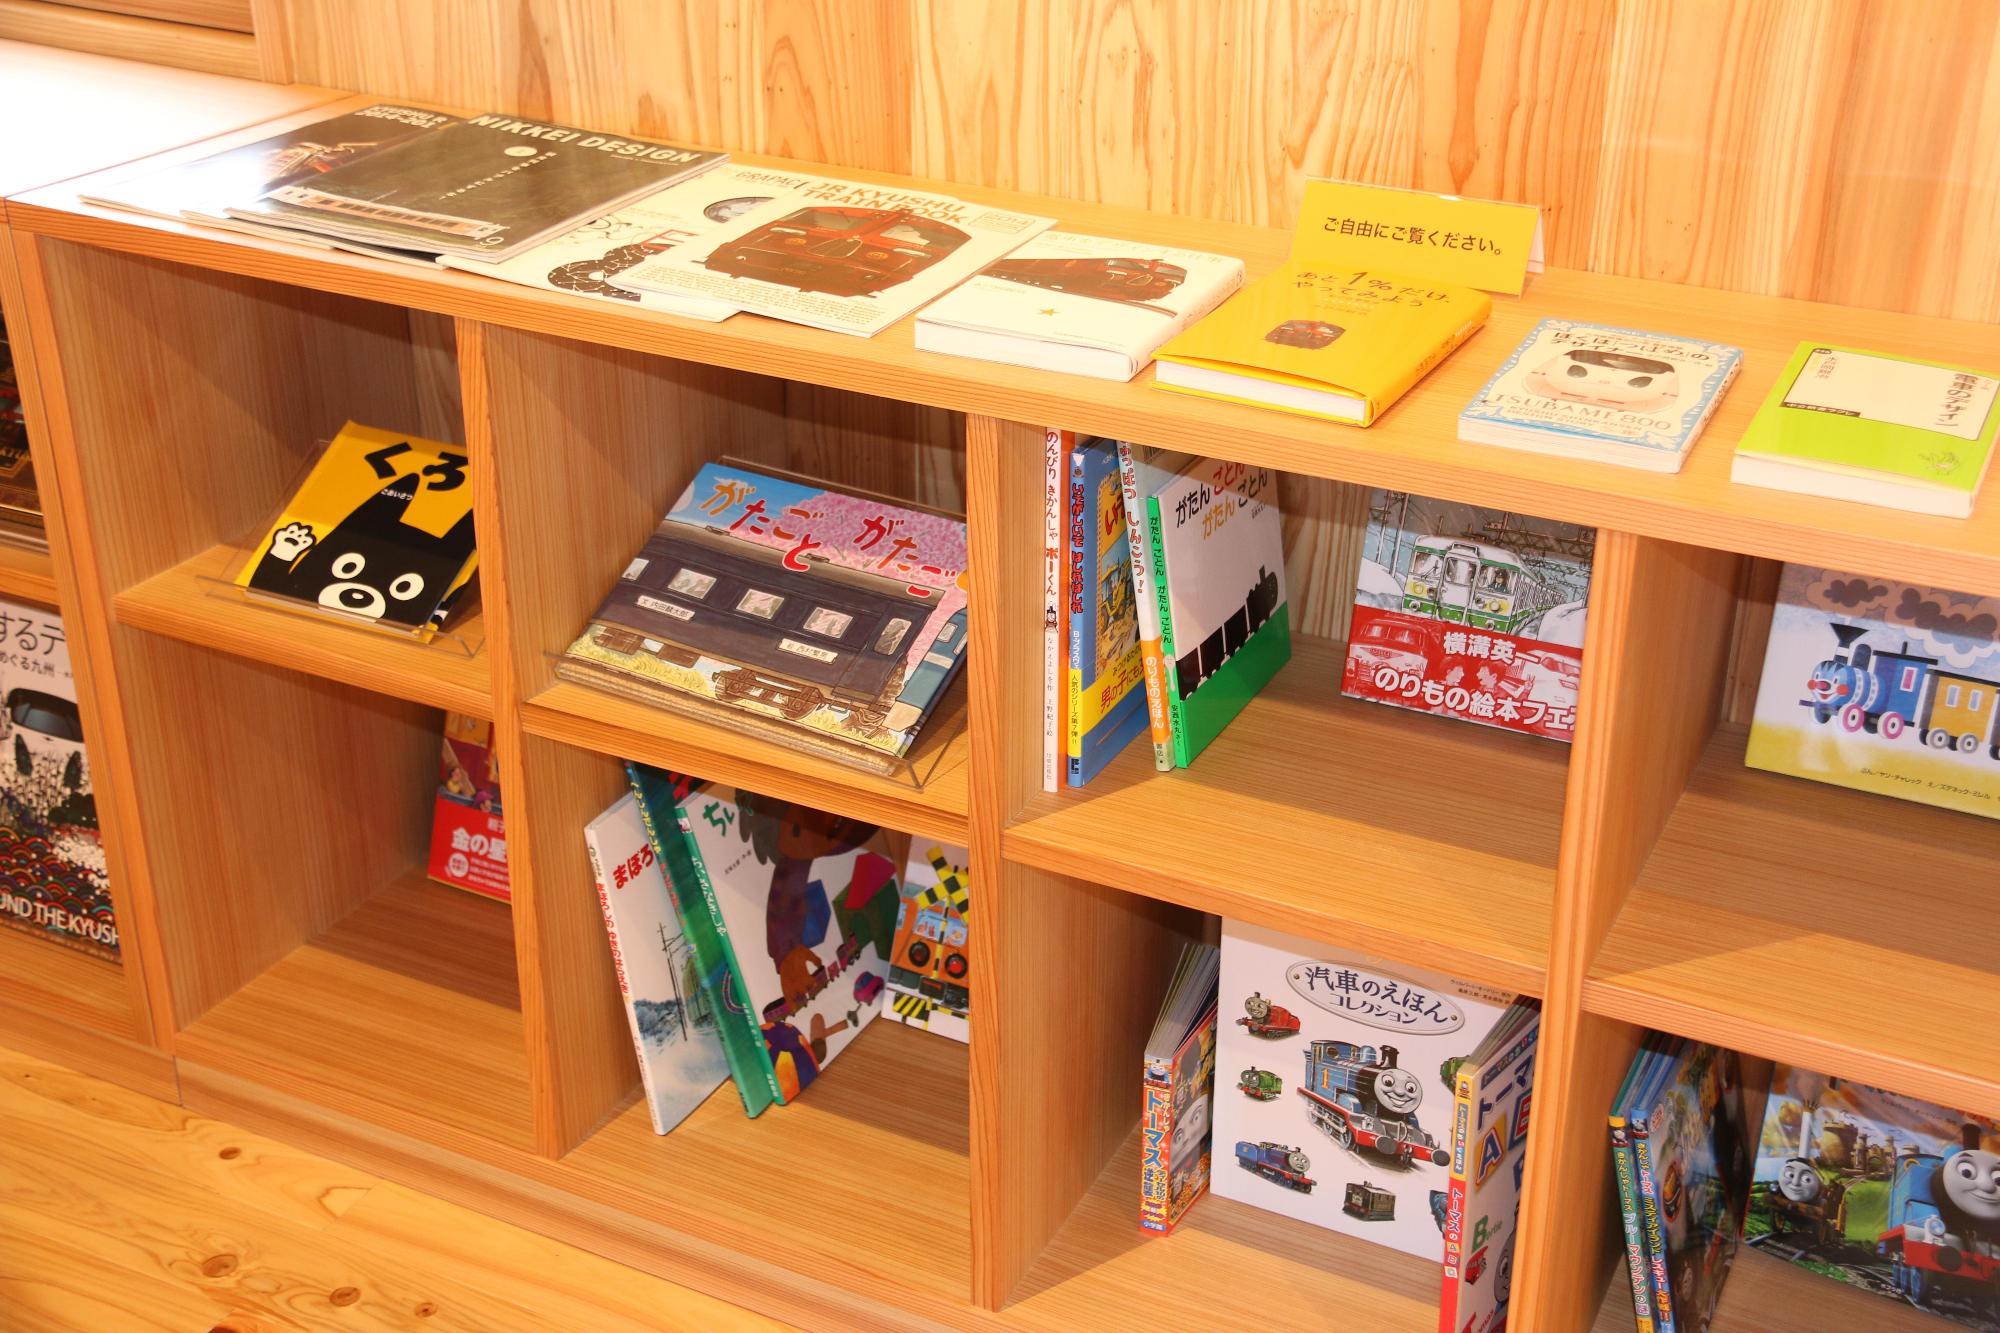 豊後森機関庫ミュージアム内にある、列車の本などが置かれている明るい茶色の本棚が写っている写真